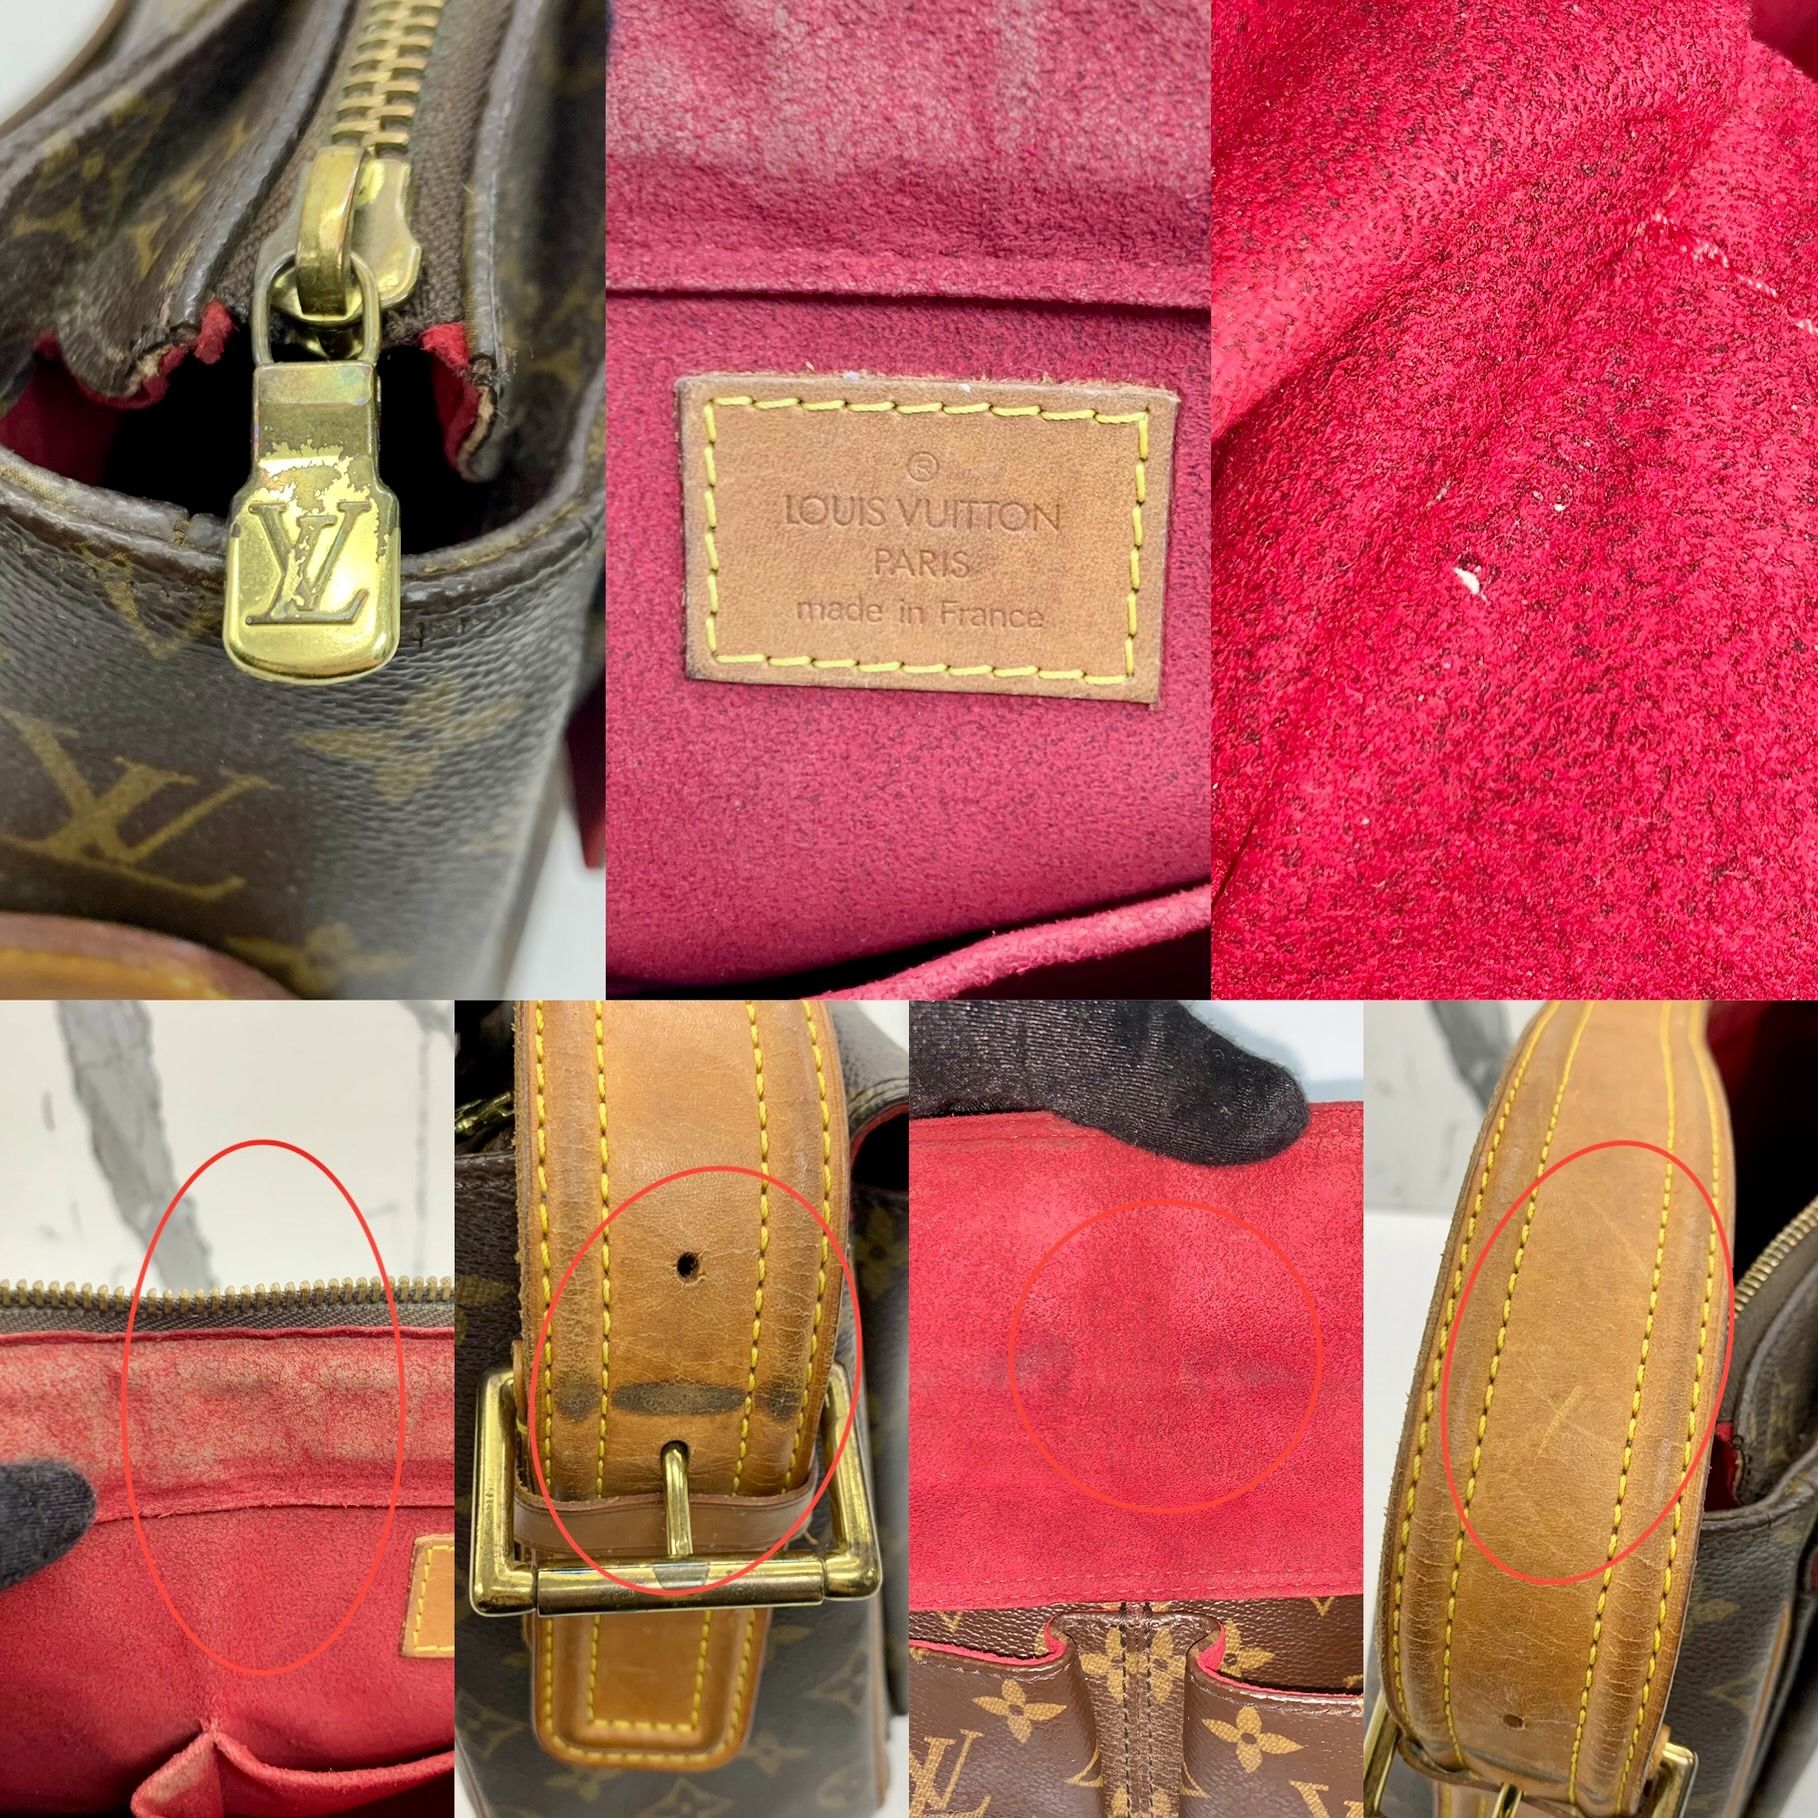 3ad3743]Auth Louis Vuitton Shoulder Bag Monogram Vivacite GM M51163